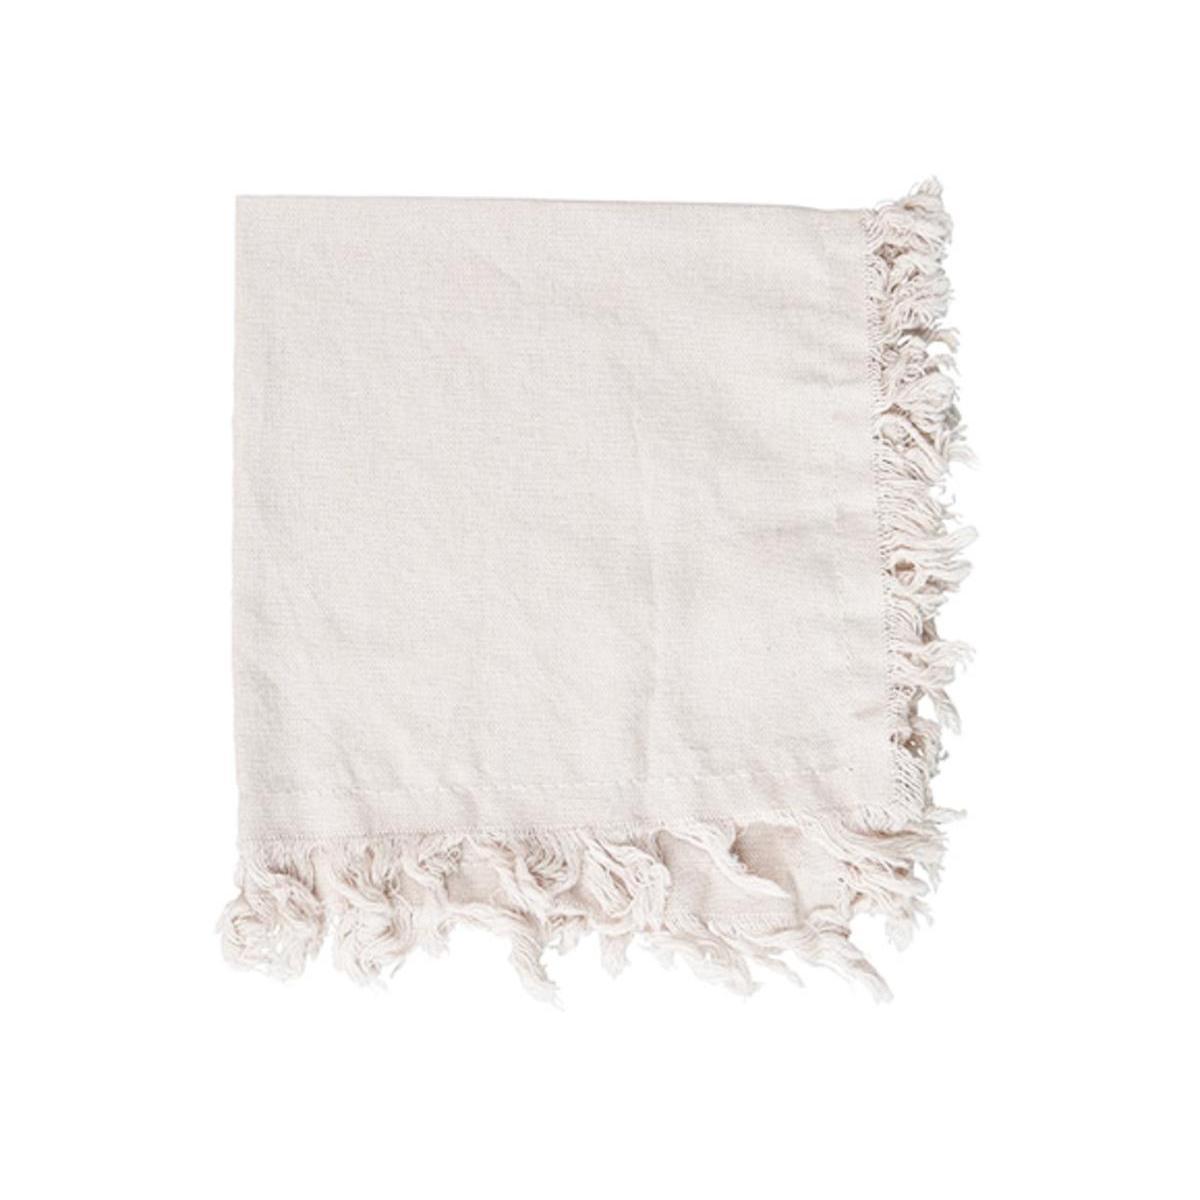 2 serviettes à franges - 38 x L 38 cm - Blanc - K.KOON